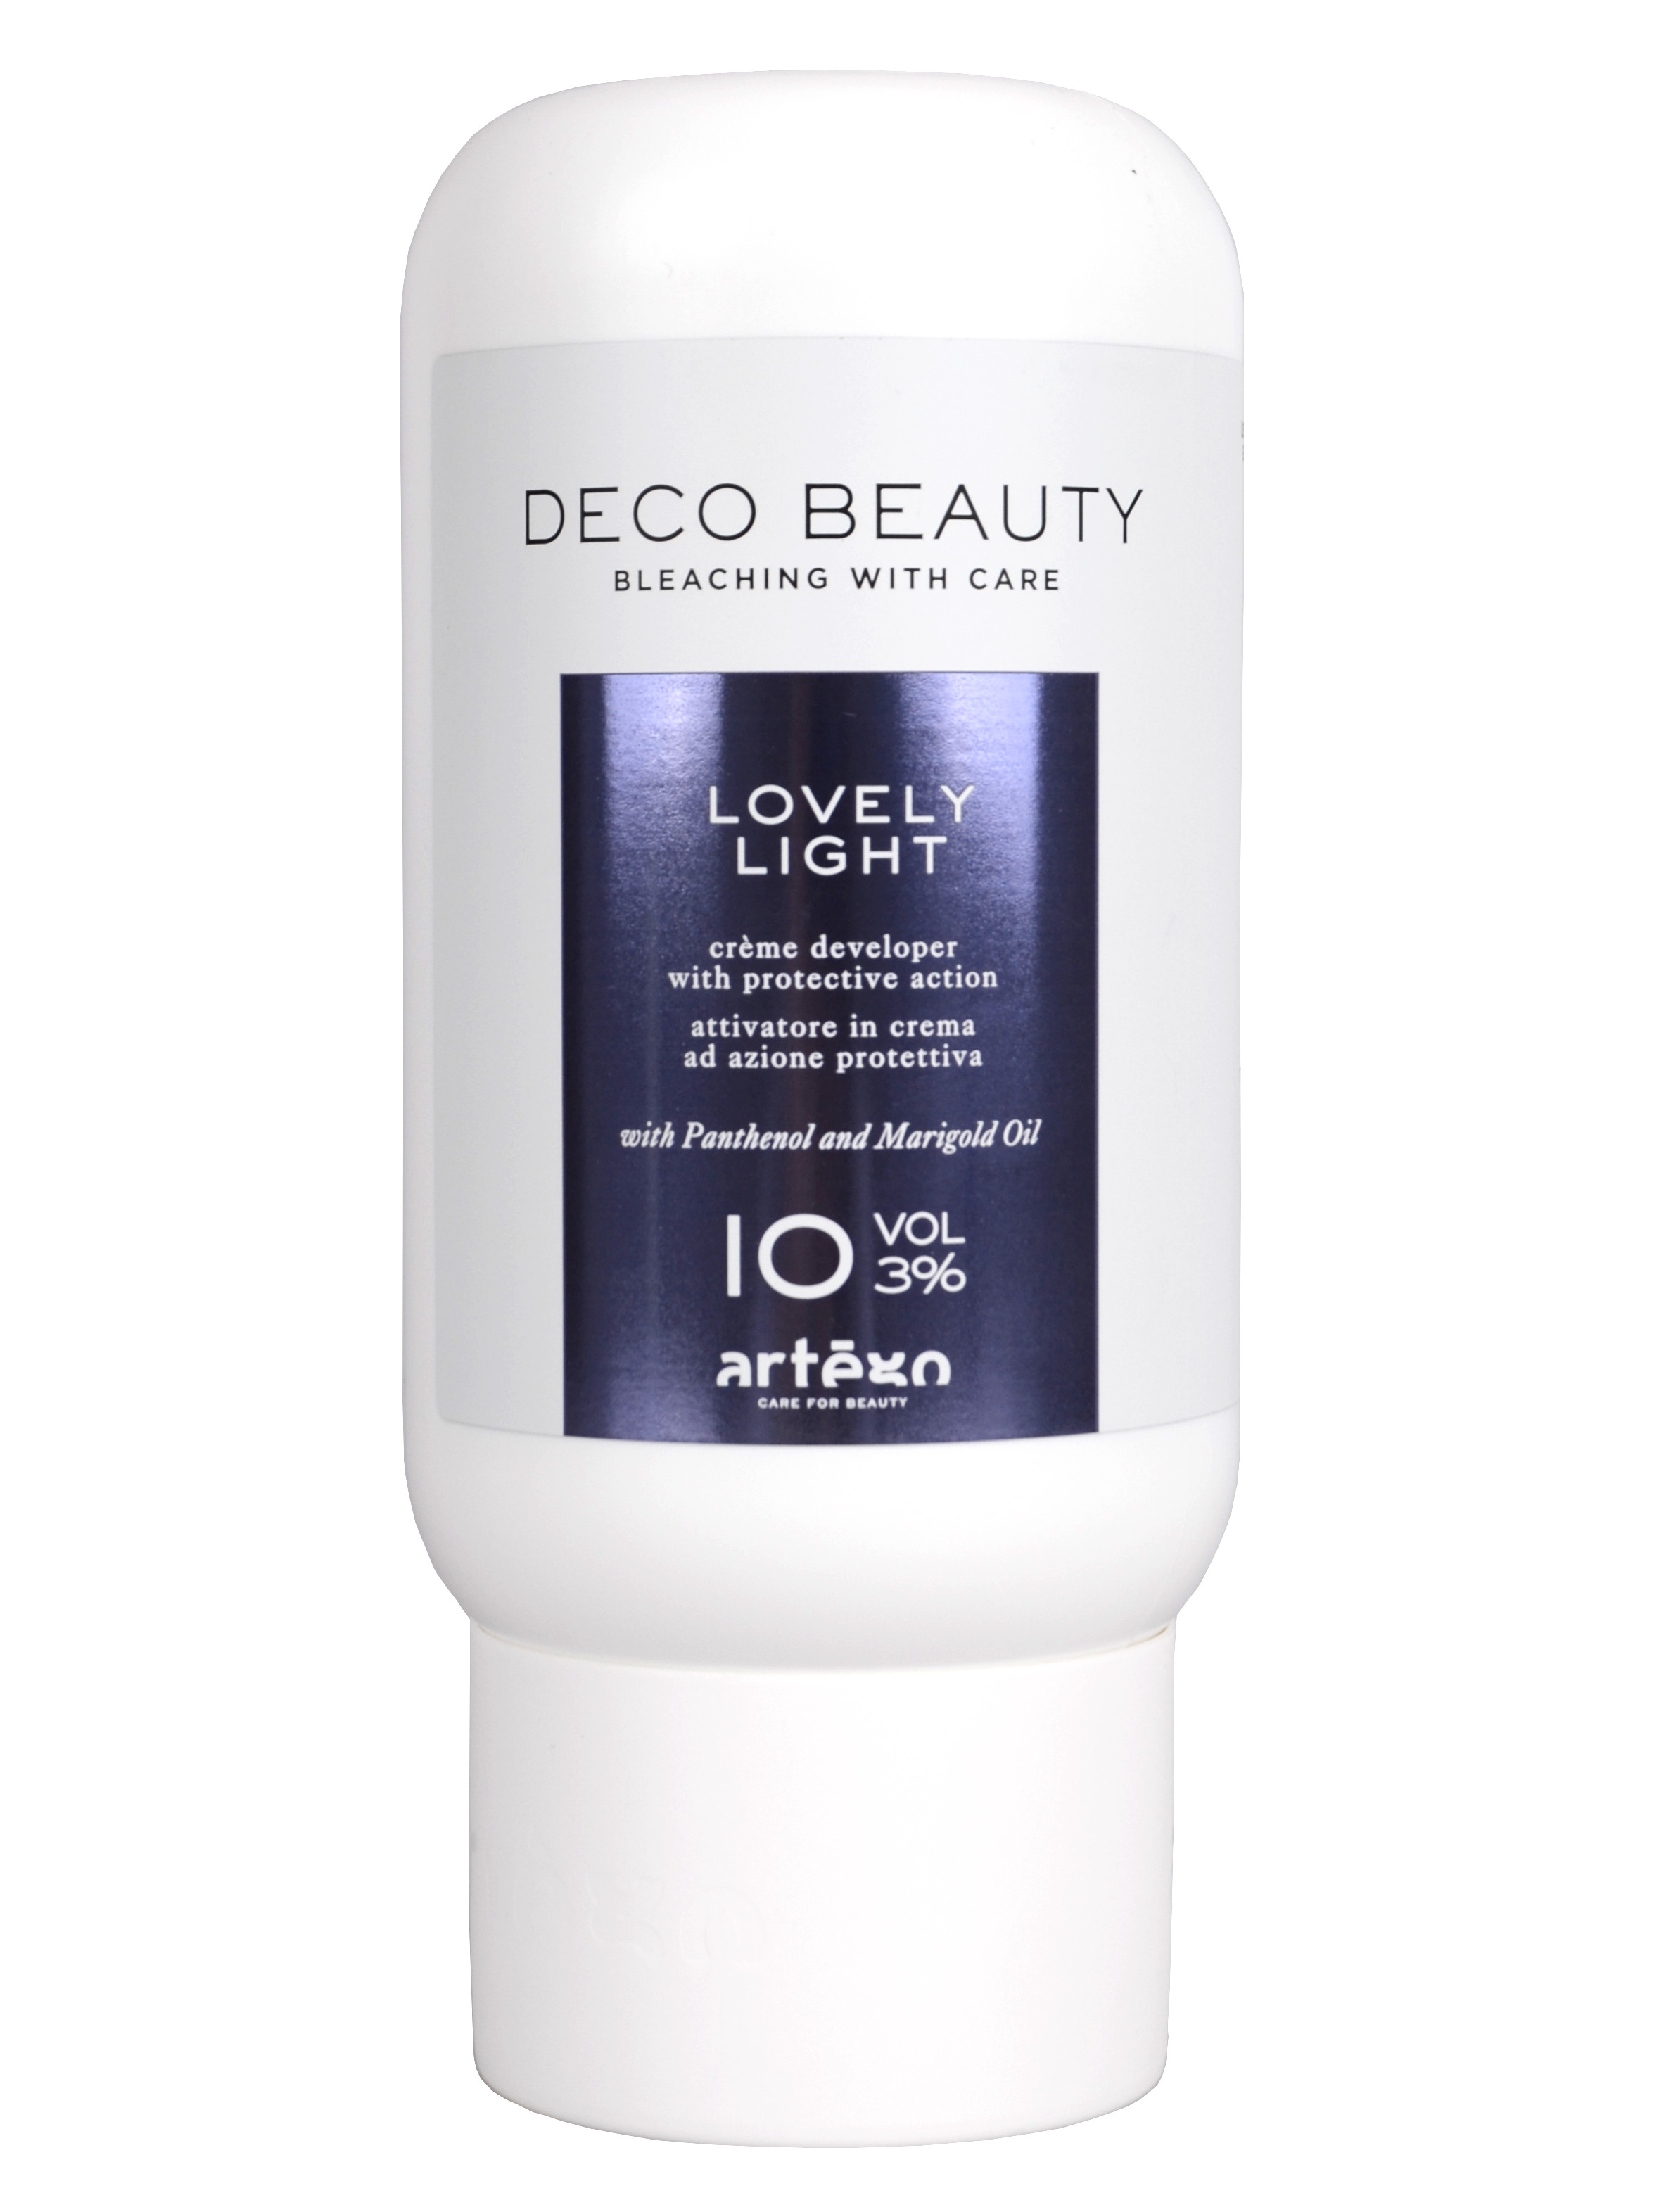 Oxidační krém Artégo Deco Beauty Lovely Light 10 VOL 3% - 1000 ml (164077) + dárek zdarma